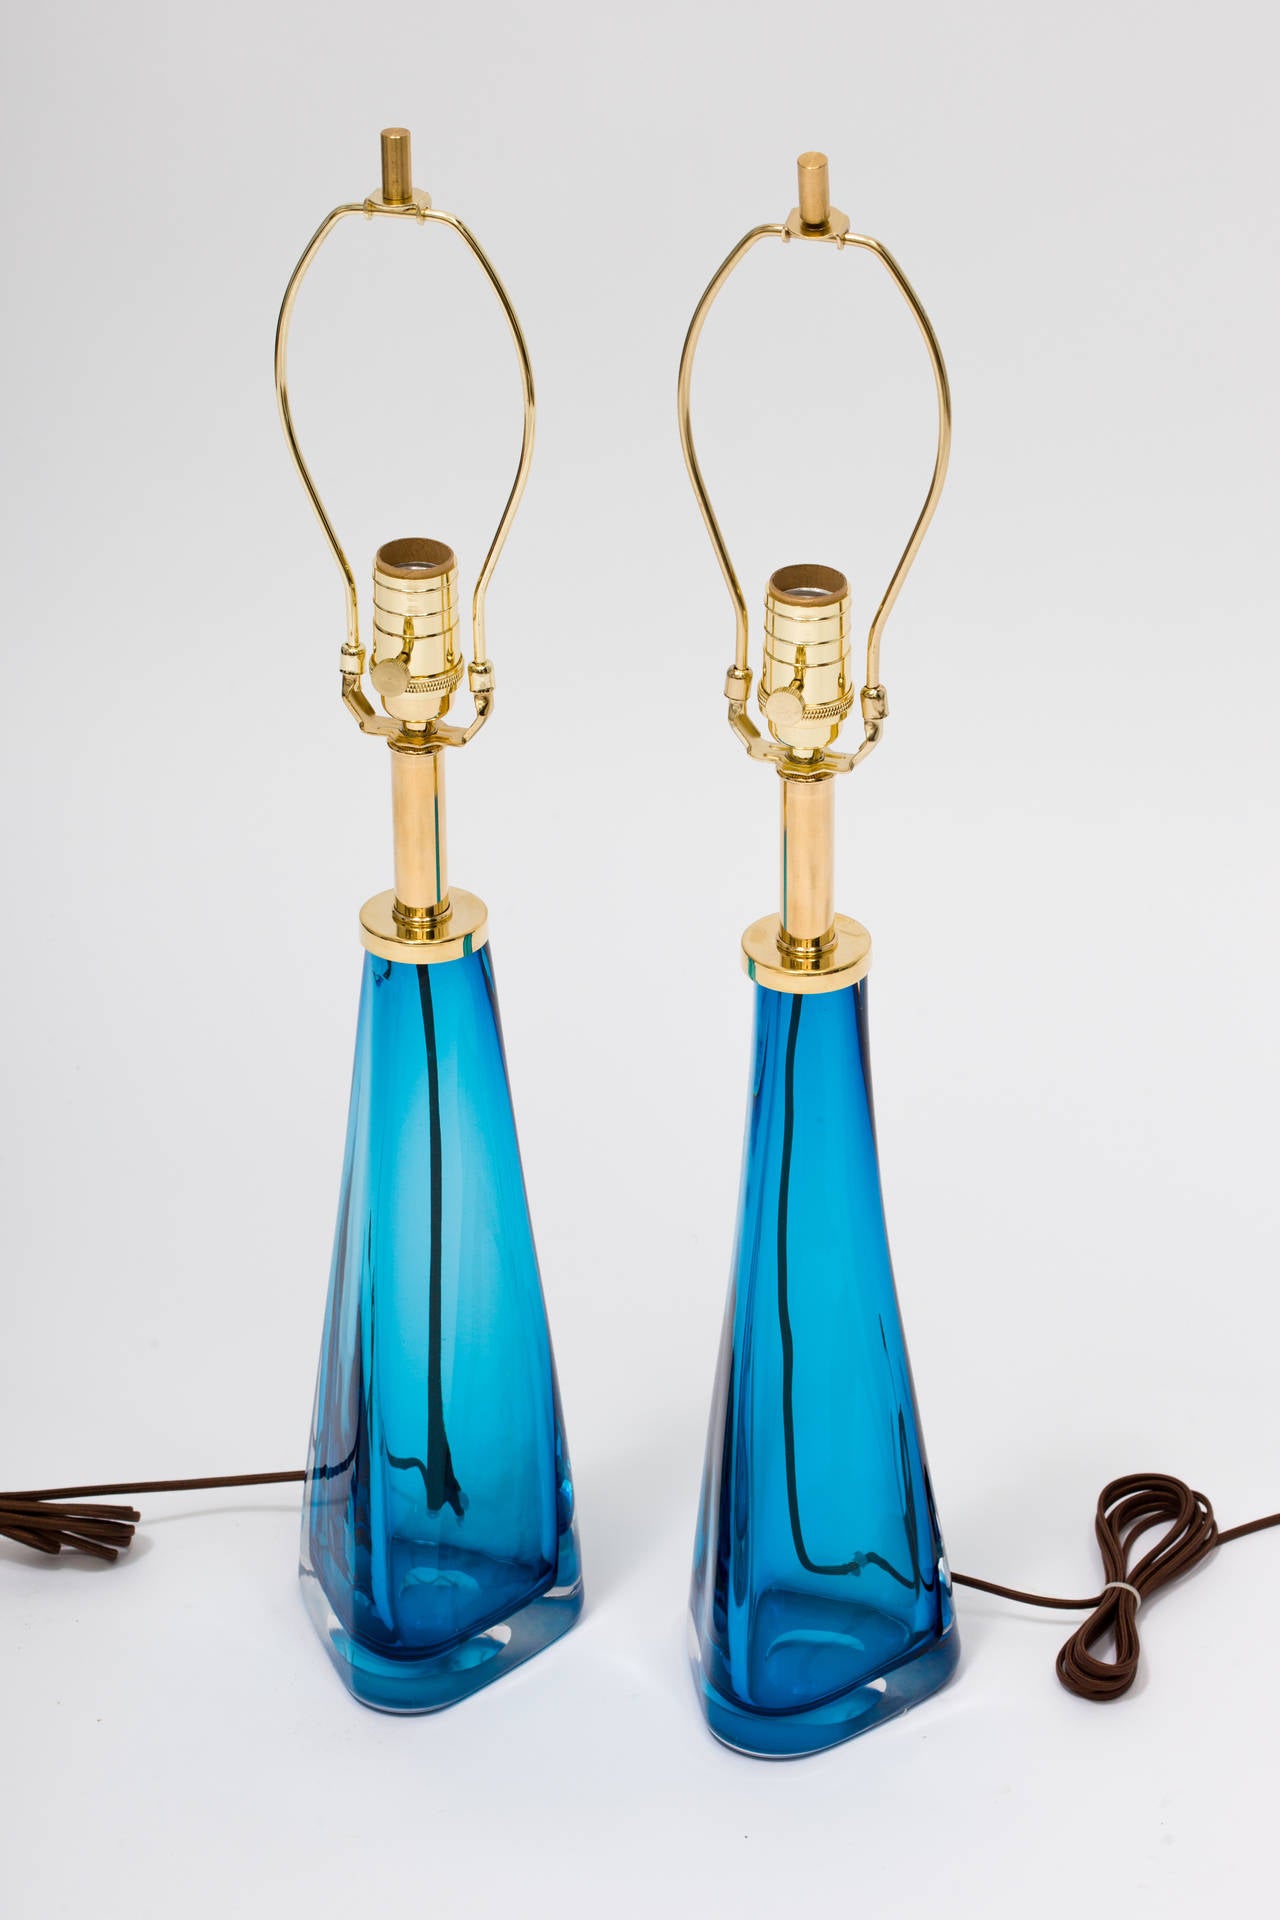 Une paire de lampes en verre bleu avec un épais boîtier en verre clair et des ferrures en laiton, dans la manière de Nils Landberg pour Orrefors
Ils sont fabriqués sur commande.